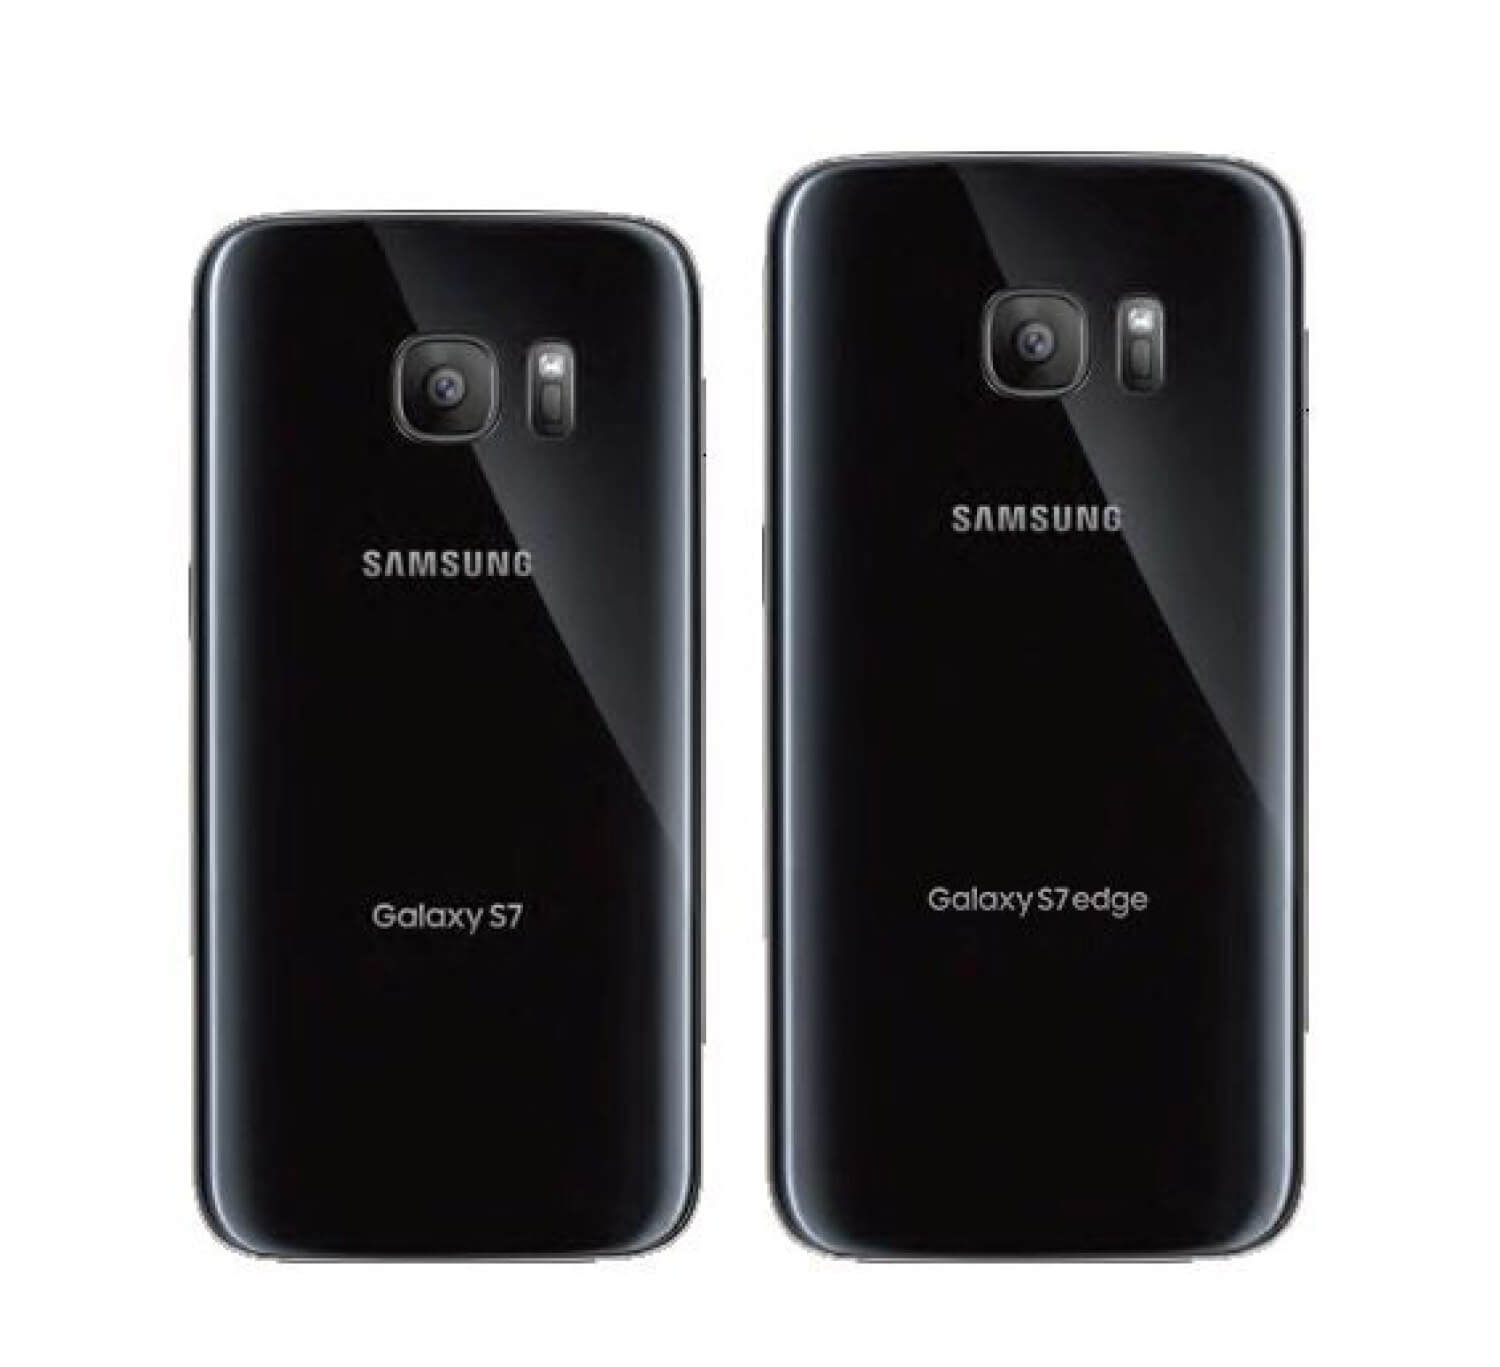 Изображения задних панелей Galaxy S7 и S7 Edge утекли в Сеть. Фото.